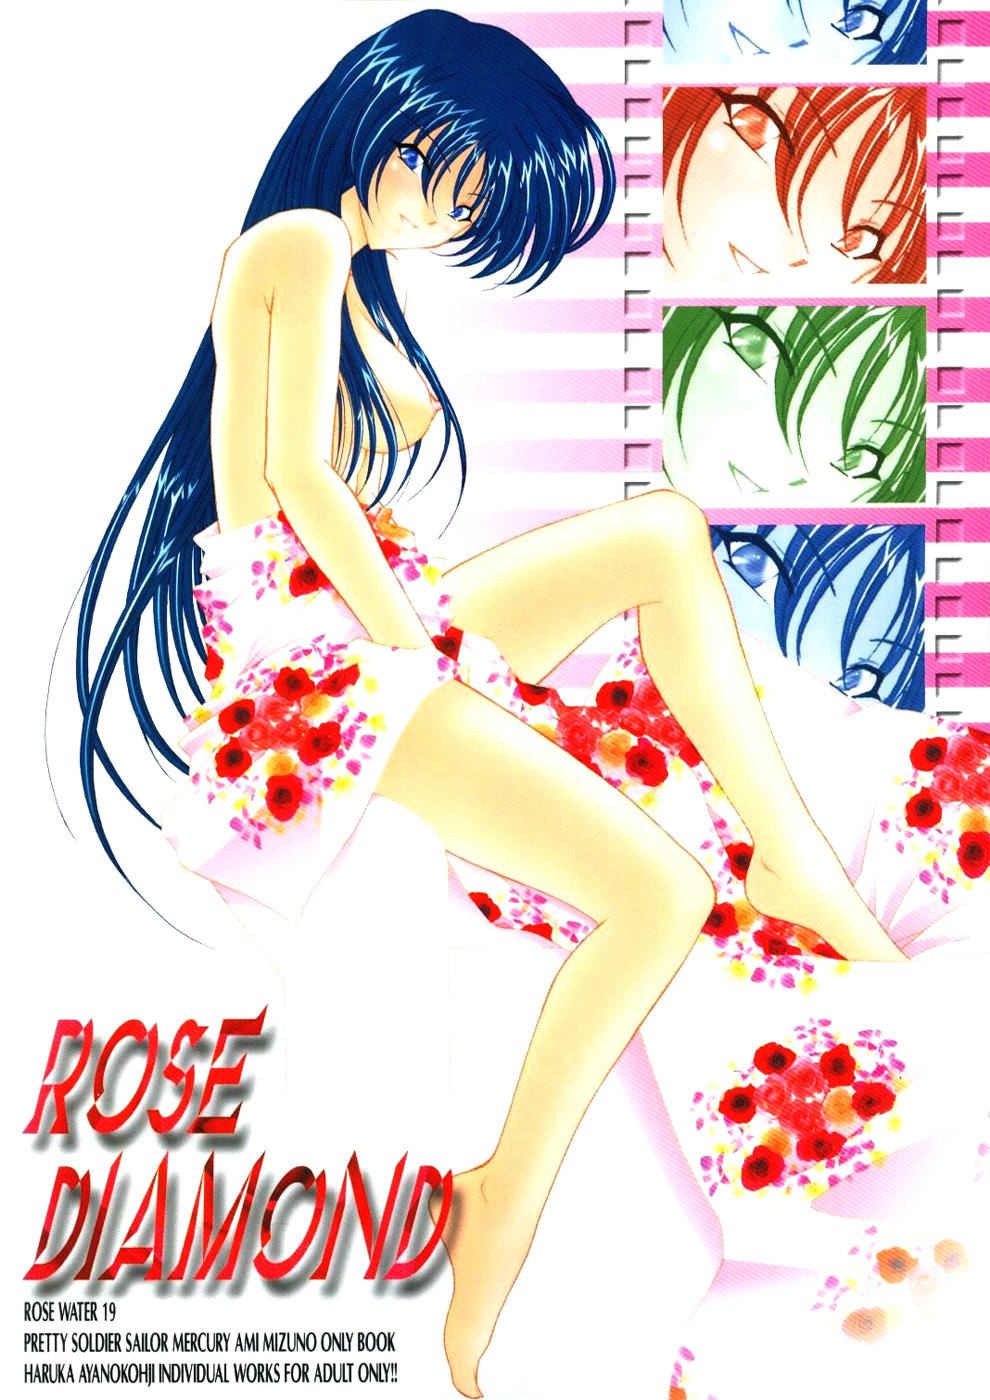 (C66) [Rose Water (Haruka Ayanokouji)] Rose Water 19 Rose Diamond (Bishoujo Senshi Sailor Moon) page 50 full